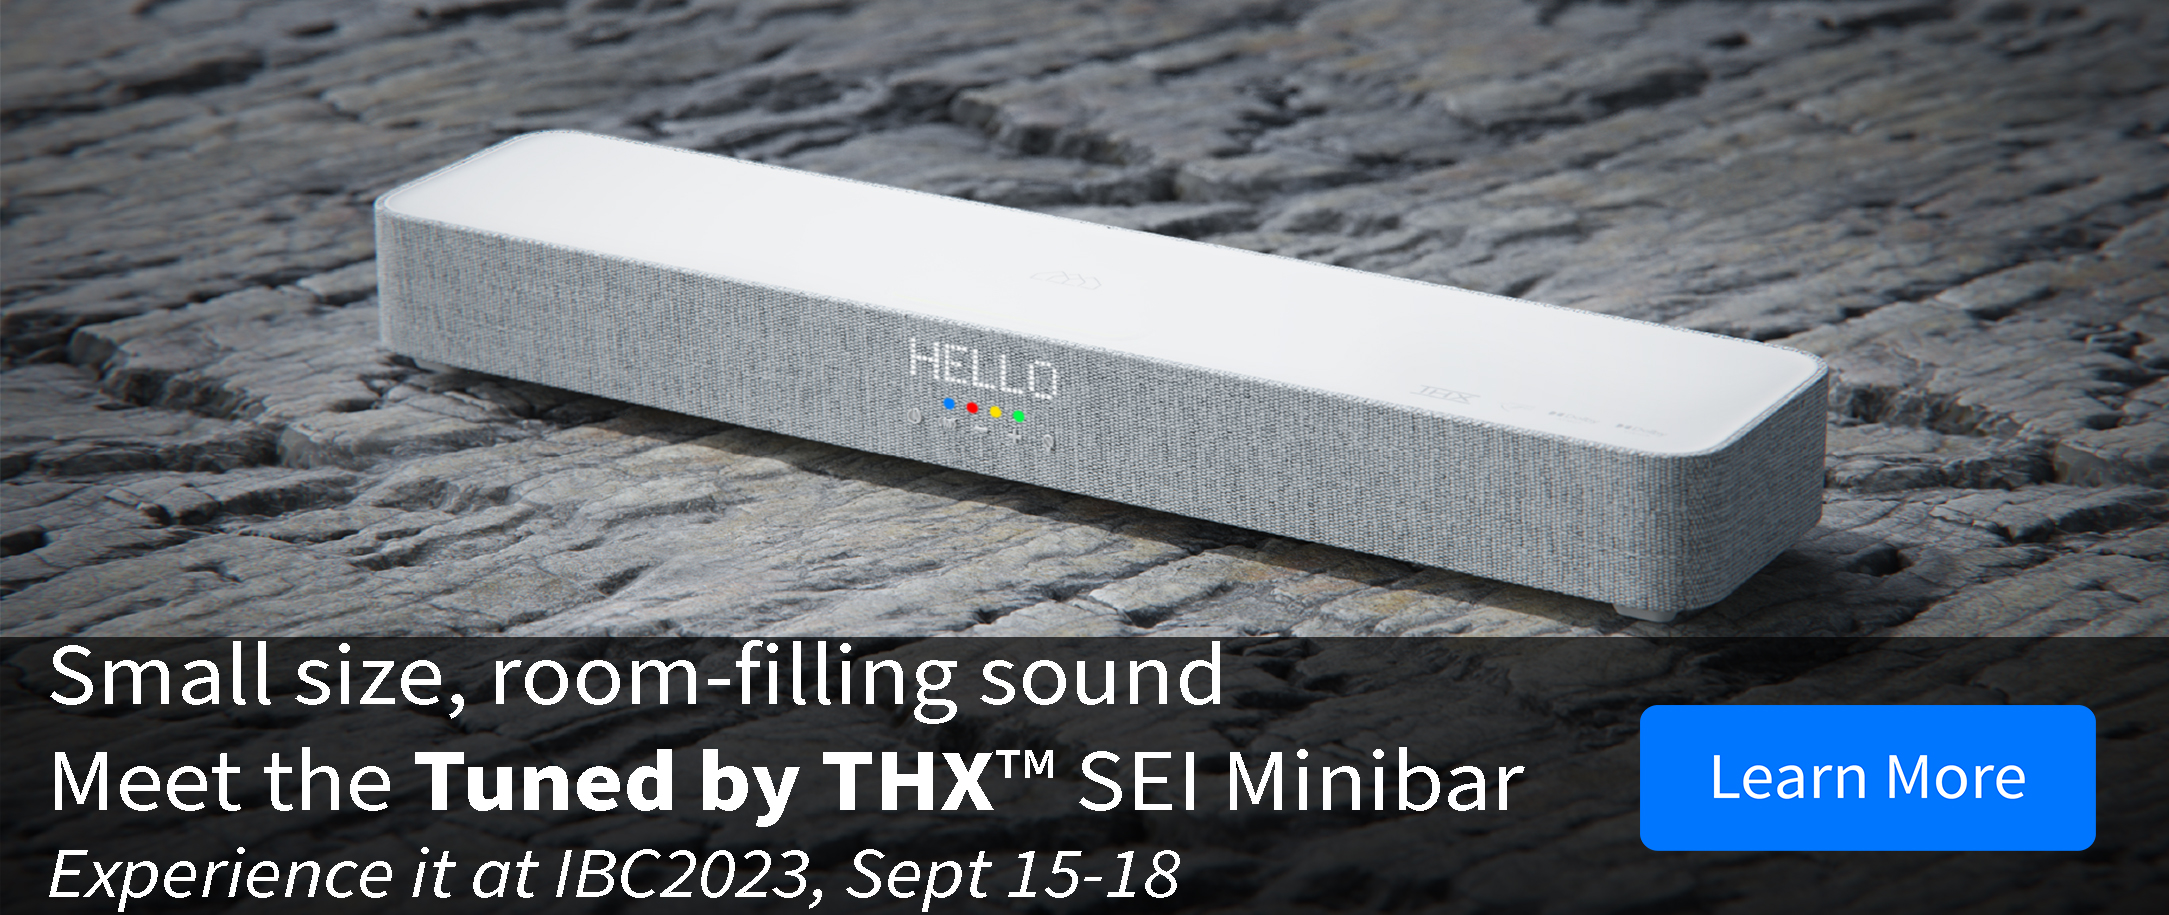 SEI Minibar featuring Tuned By THX™ announcement